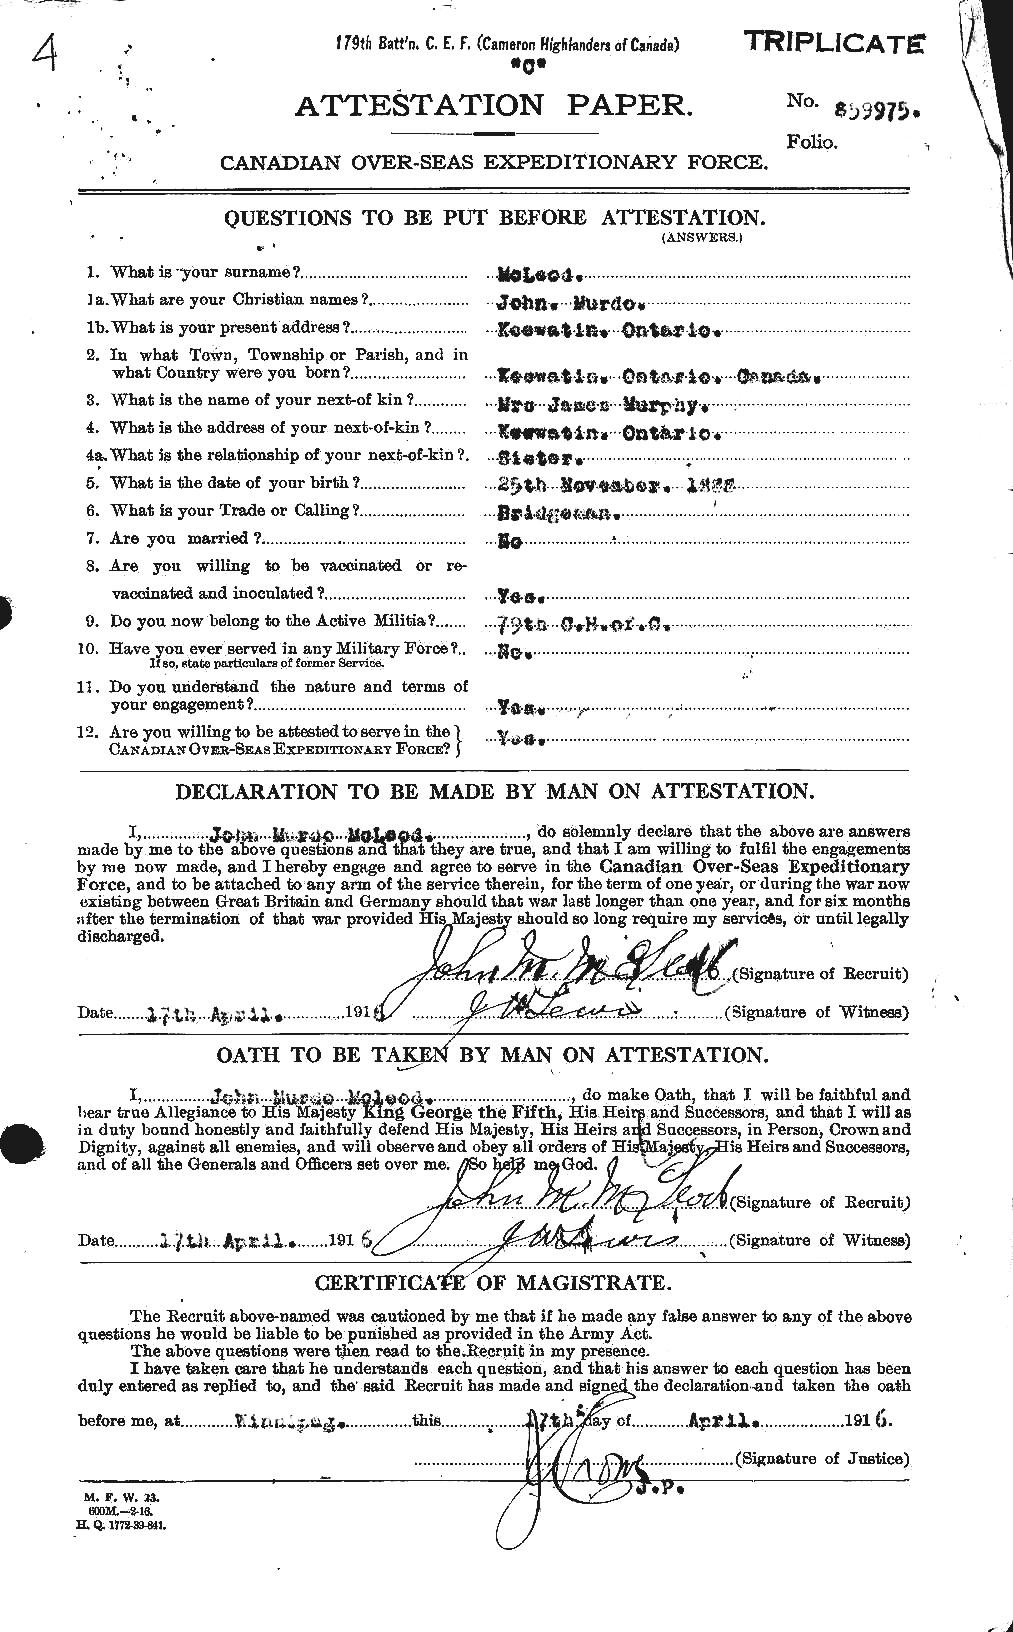 Dossiers du Personnel de la Première Guerre mondiale - CEC 535034a